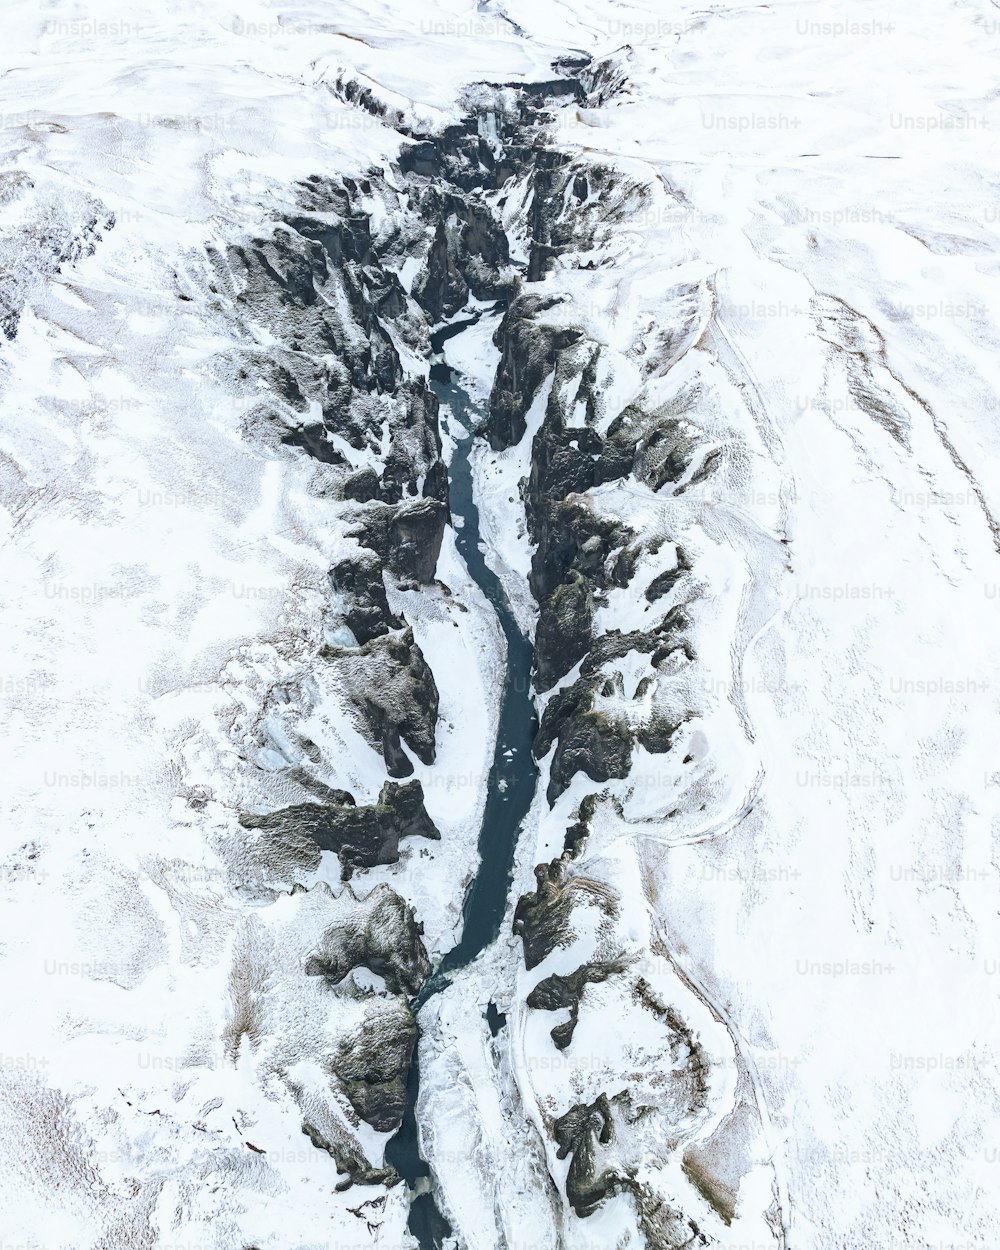 Una veduta aerea di un fiume che attraversa un paesaggio innevato